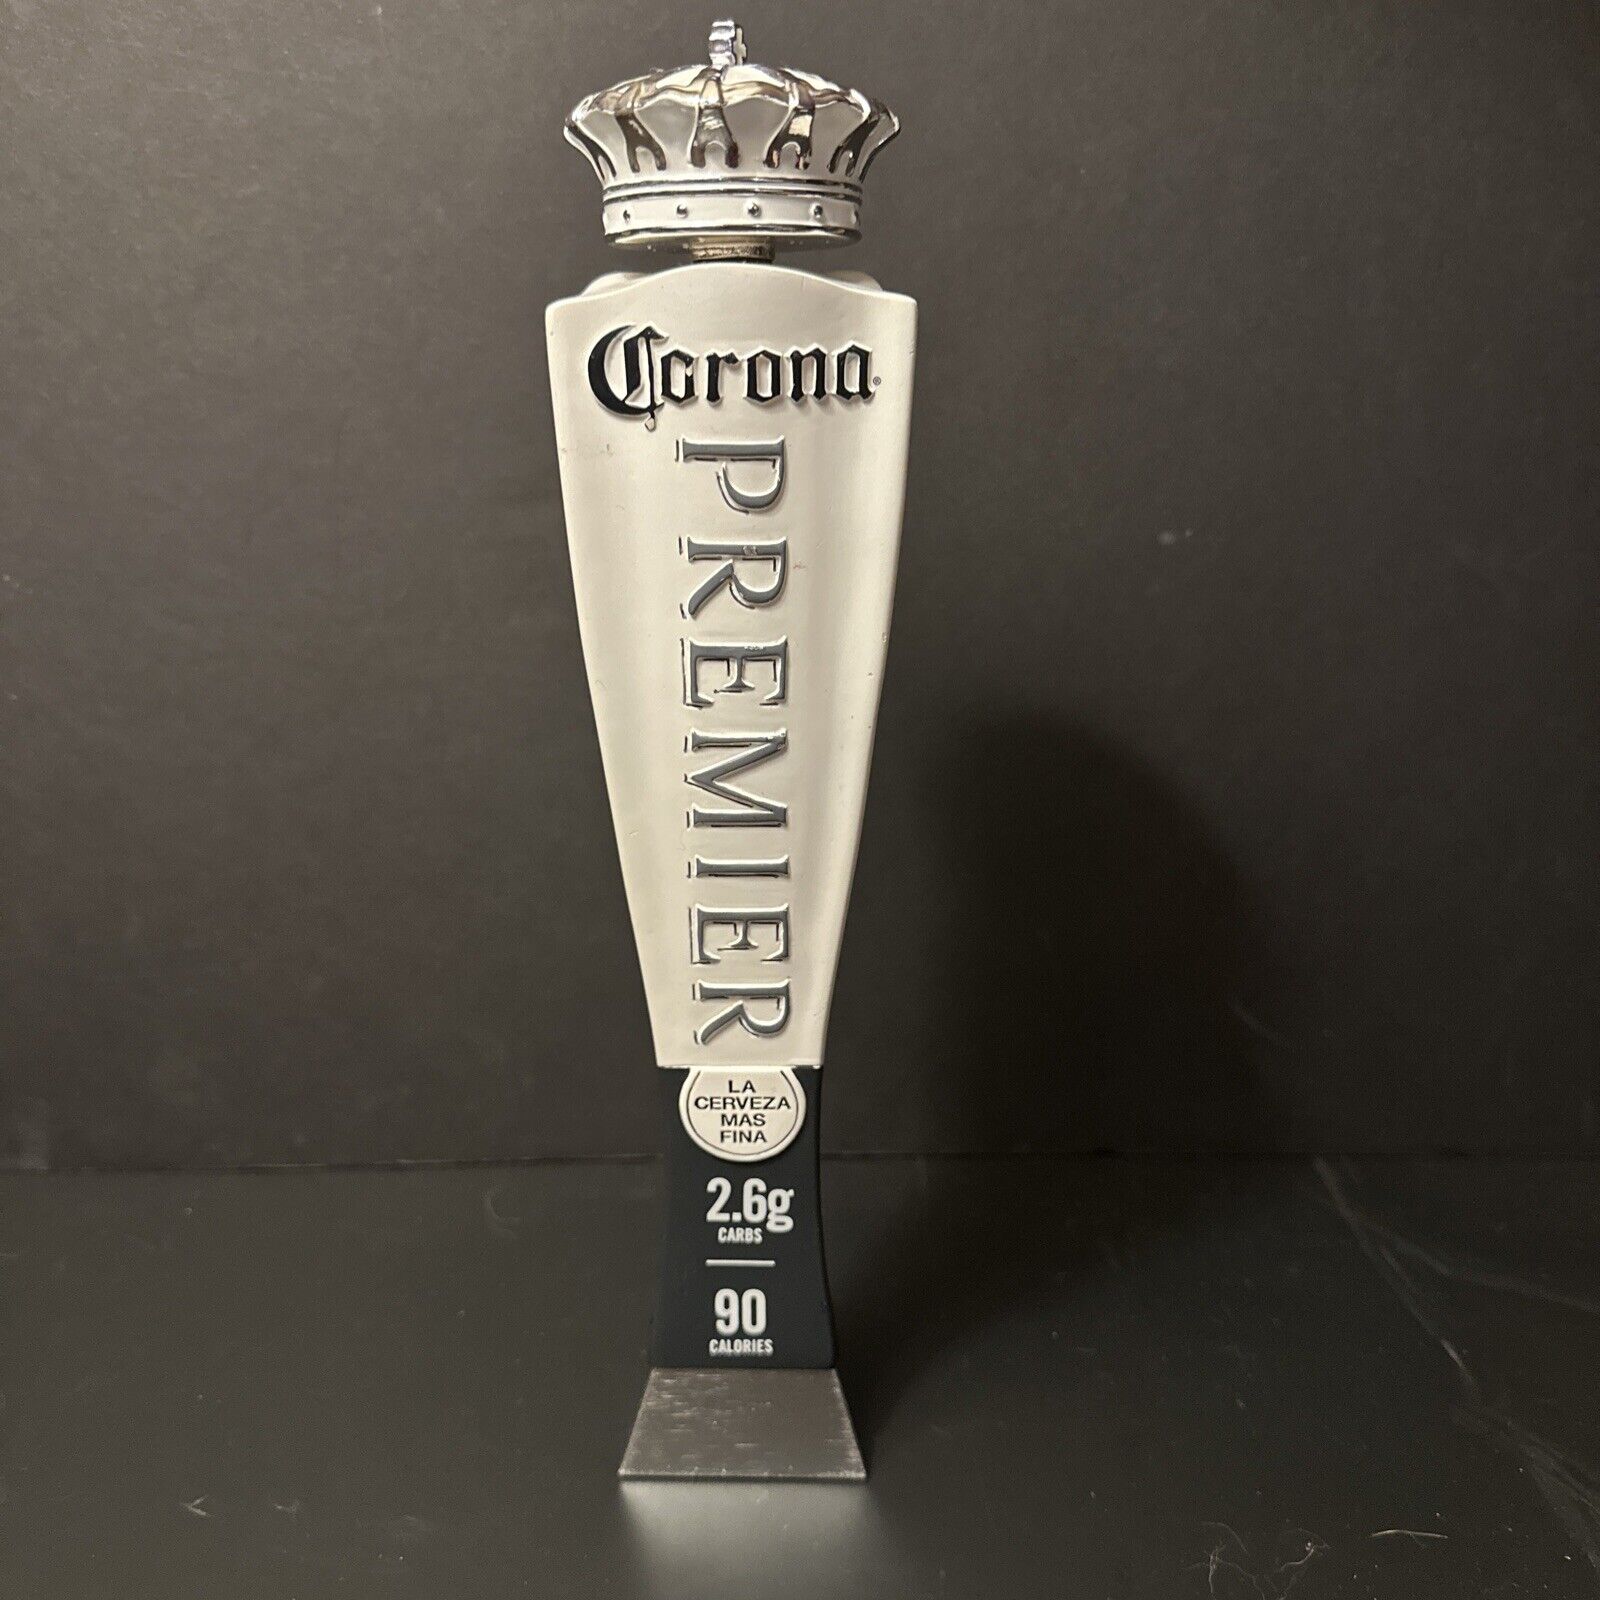 Corona Premier Cerveza Beer Tap Handle 13” w/Silver Crown Top Rare HTF NIB